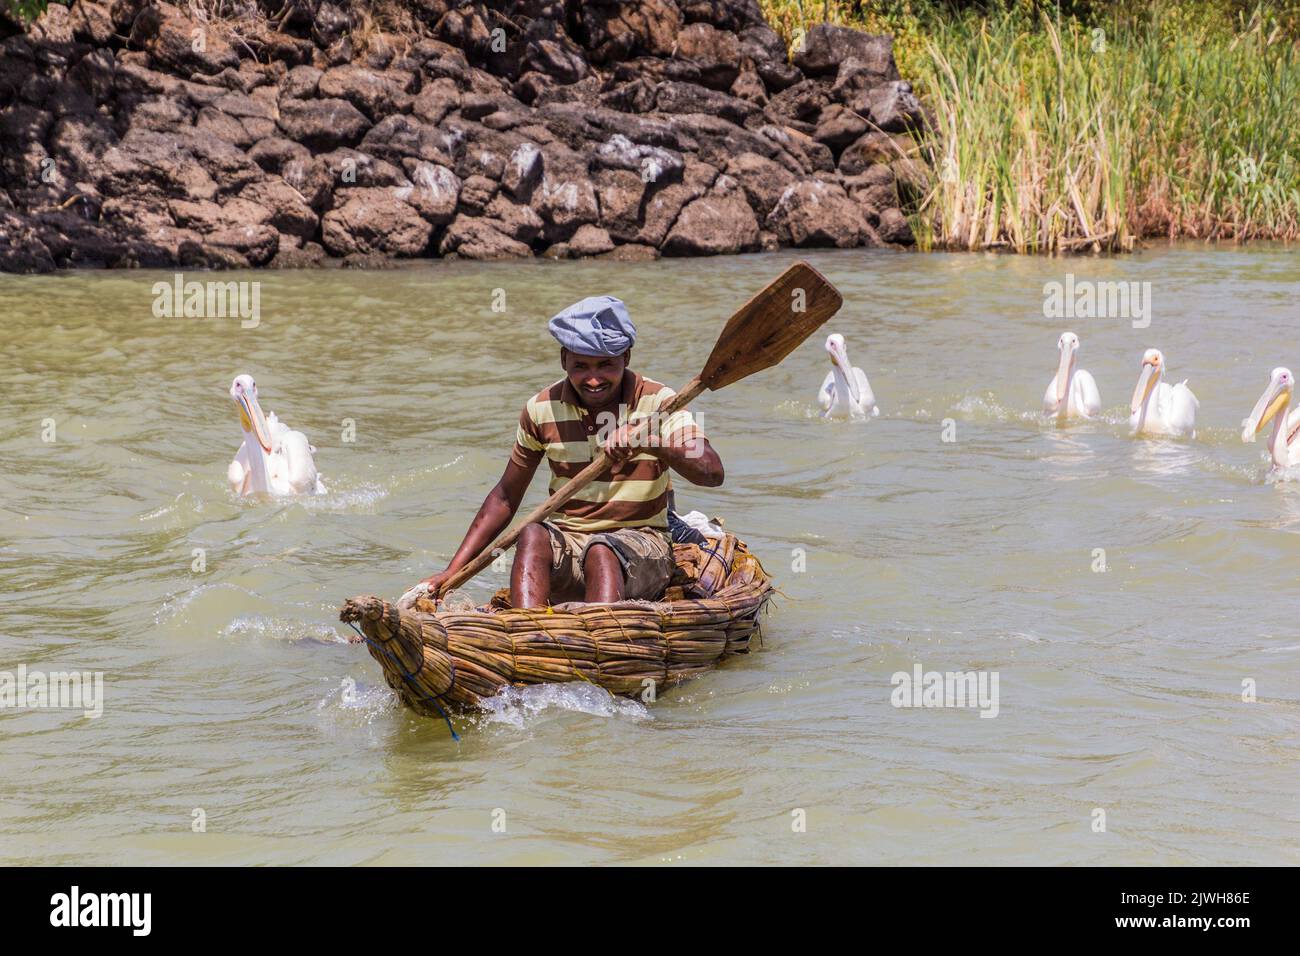 TANA, ETIOPIA - 1 APRILE 2019: Pescatore locale su una piccola barca e grandi pellicani bianchi (Pelecanus onocrotalus) al lago di Tana, Etiopia Foto Stock